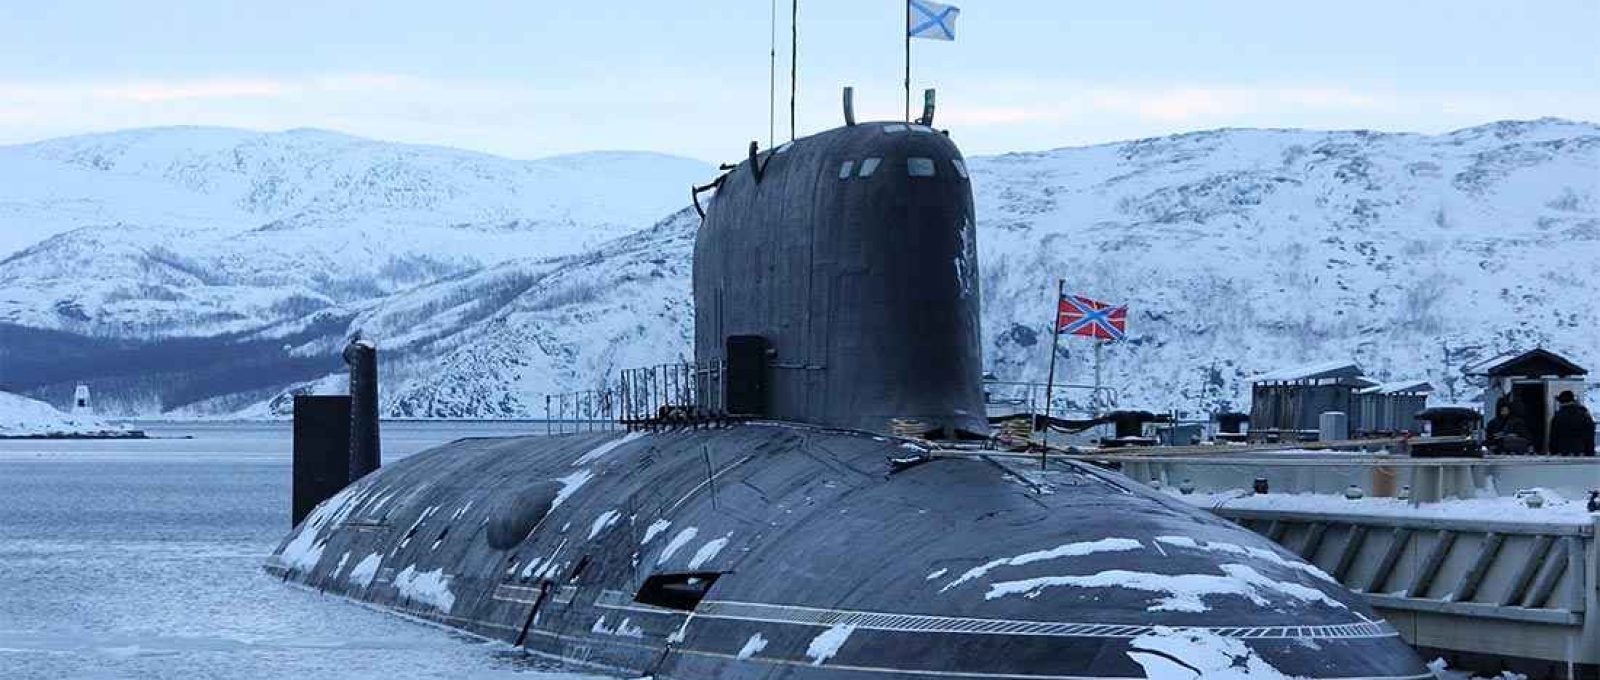 O K-560 Severodvinsk, submarino de mísseis de cruzeiro movidos a energia nuclear da classe Yasen (Foto: Ministério da Defesa da Federação Russa).